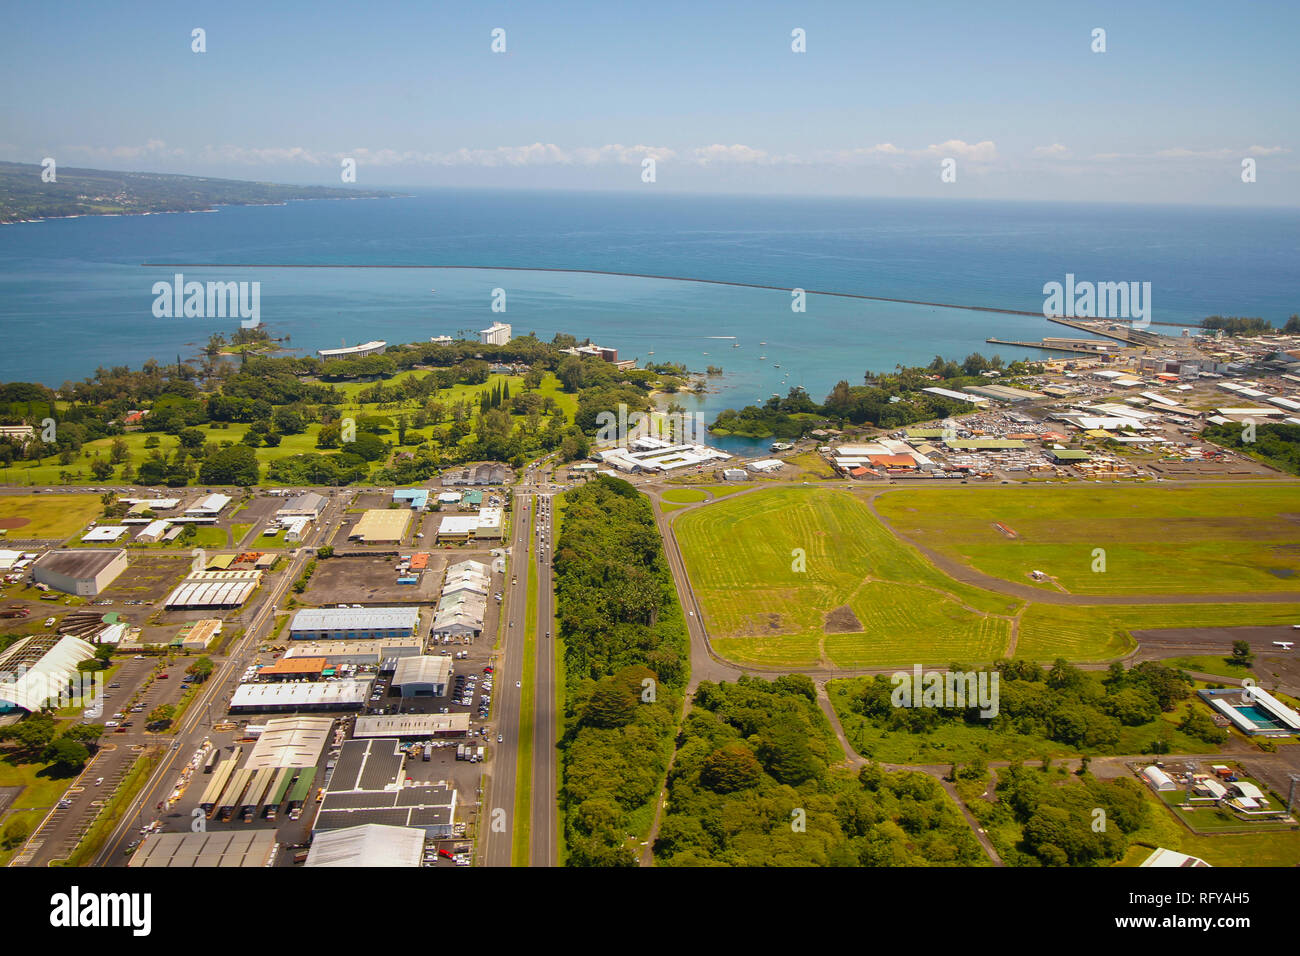 Vista aérea de hilo, uno de los poblados más grandes en Big Island, Hawai Foto de stock